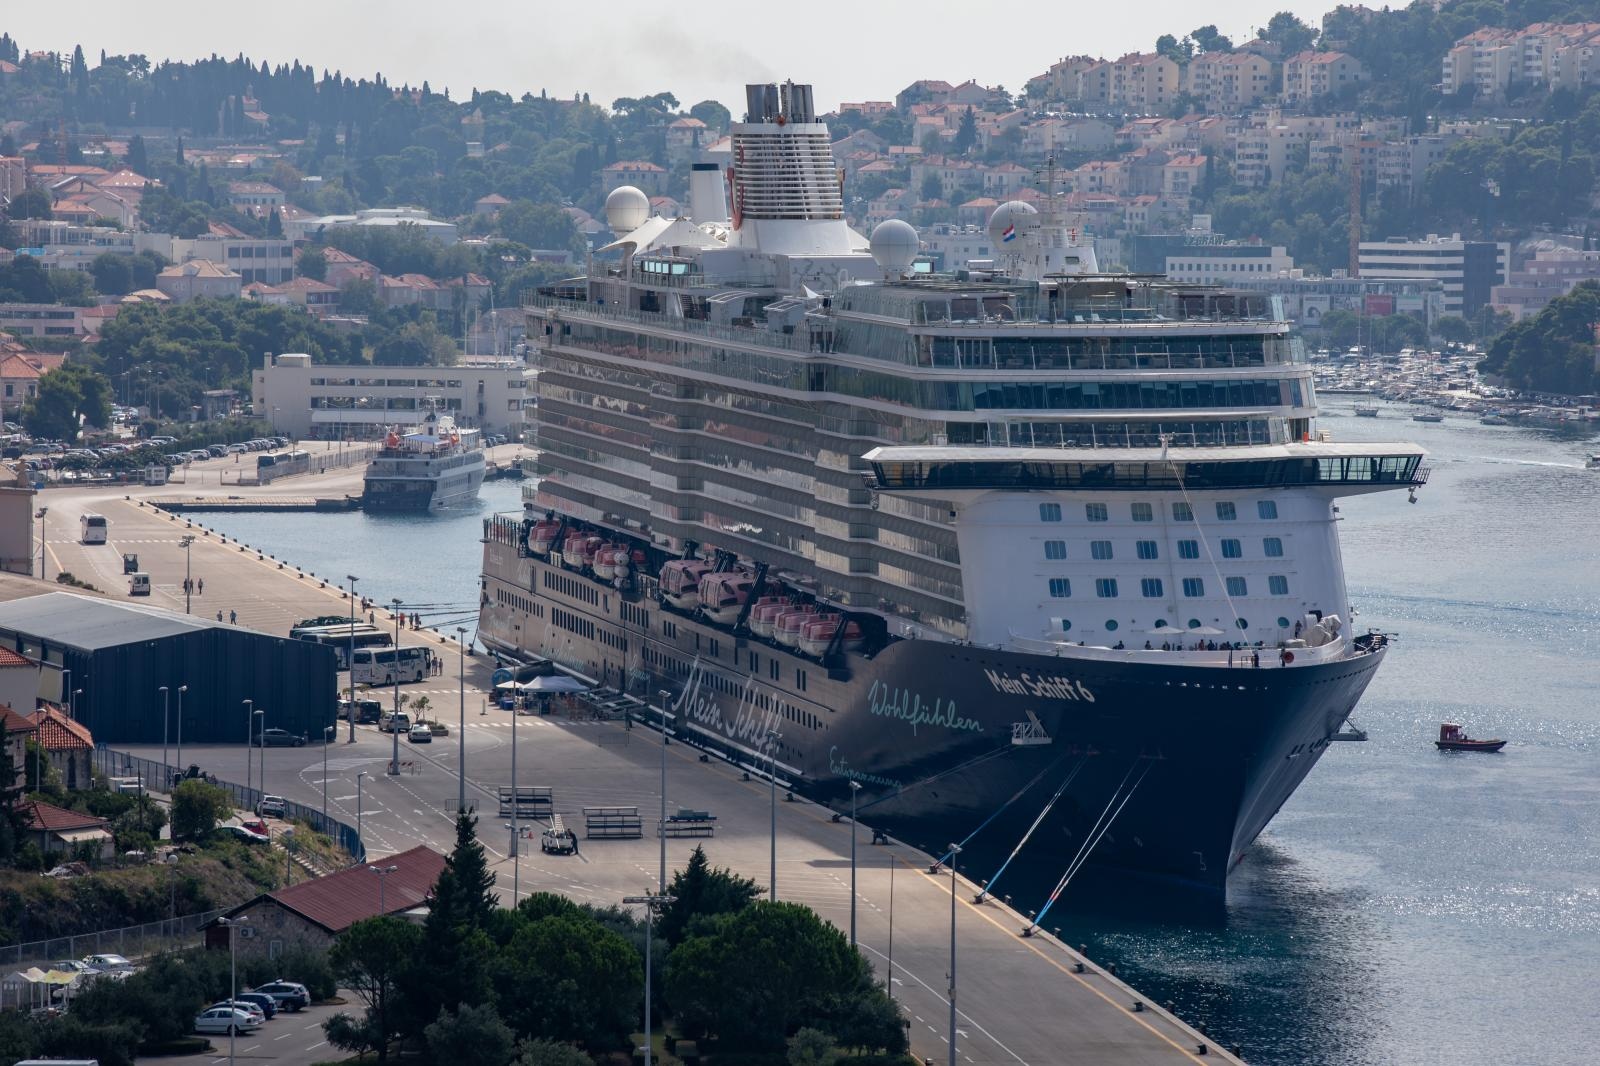 17.09.2019., Luka Gruz, Dubrovnik - Mein Schiff 6, brod TUI Cruises vezan u Gruskoj luci.
Photo: Grgo Jelavic/PIXSELL